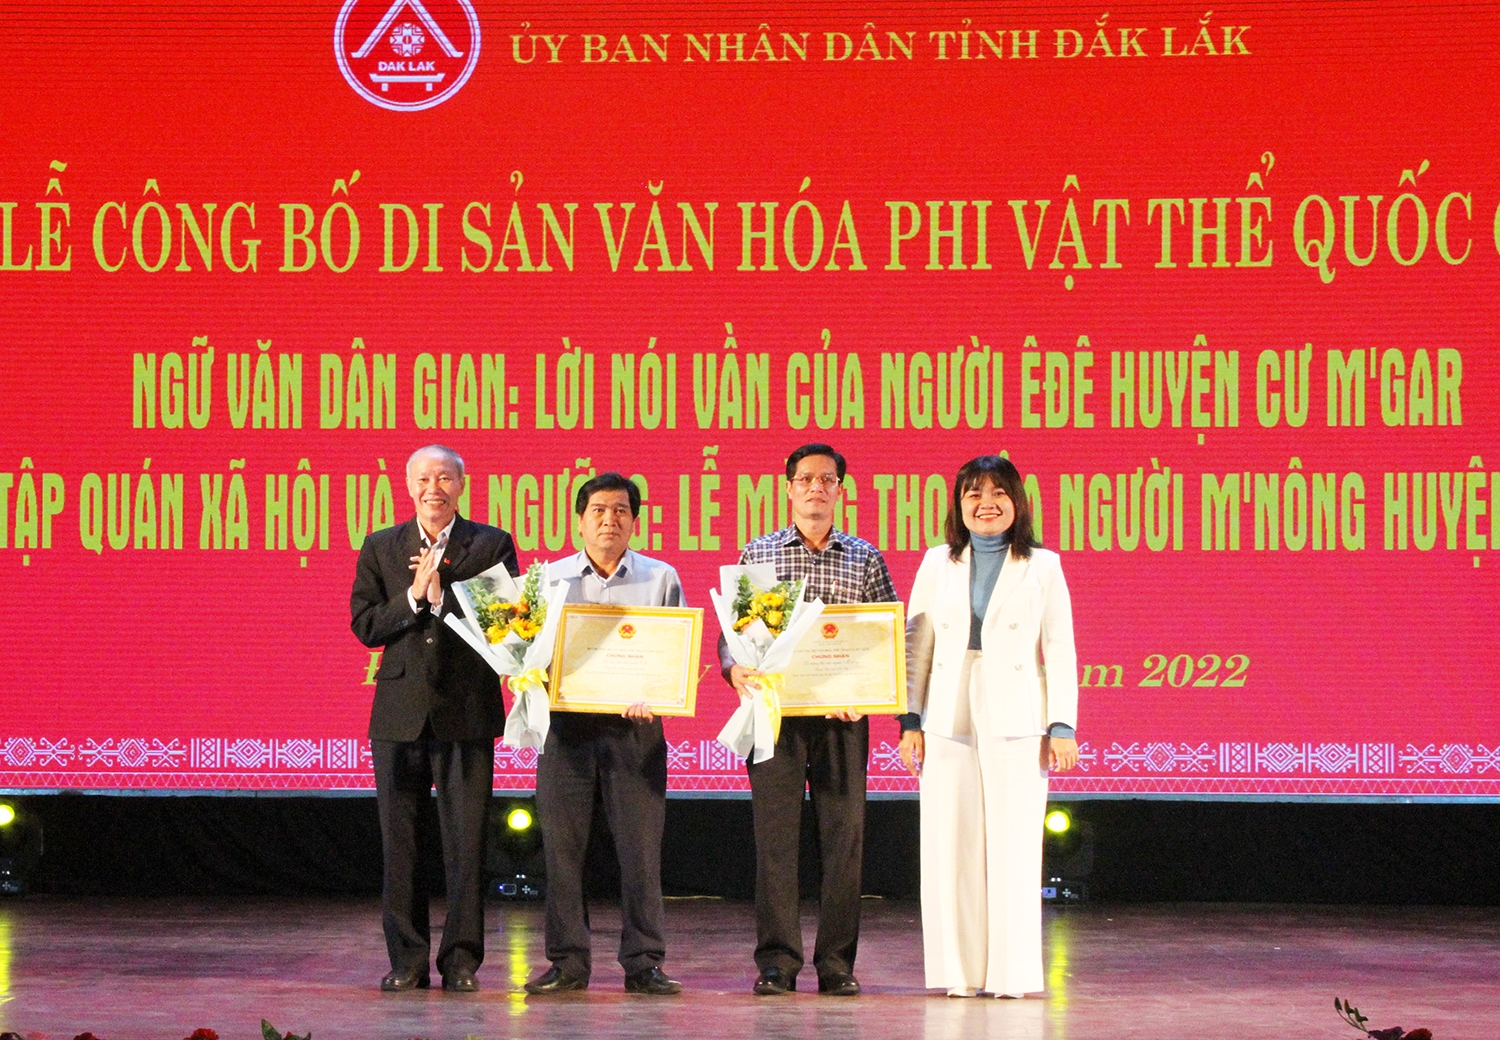 Phó Chủ tịch UBND tỉnh Đắk Lắk H’Yim Kdoh và Giám đốc Sở Văn hóa, Thể thao và Du lịch Thái Hồng Hà trao Chứng nhận Di sản văn hóa phi vật thể Quốc gia cho đại diện 2 huyện (Ảnh năm 2022)